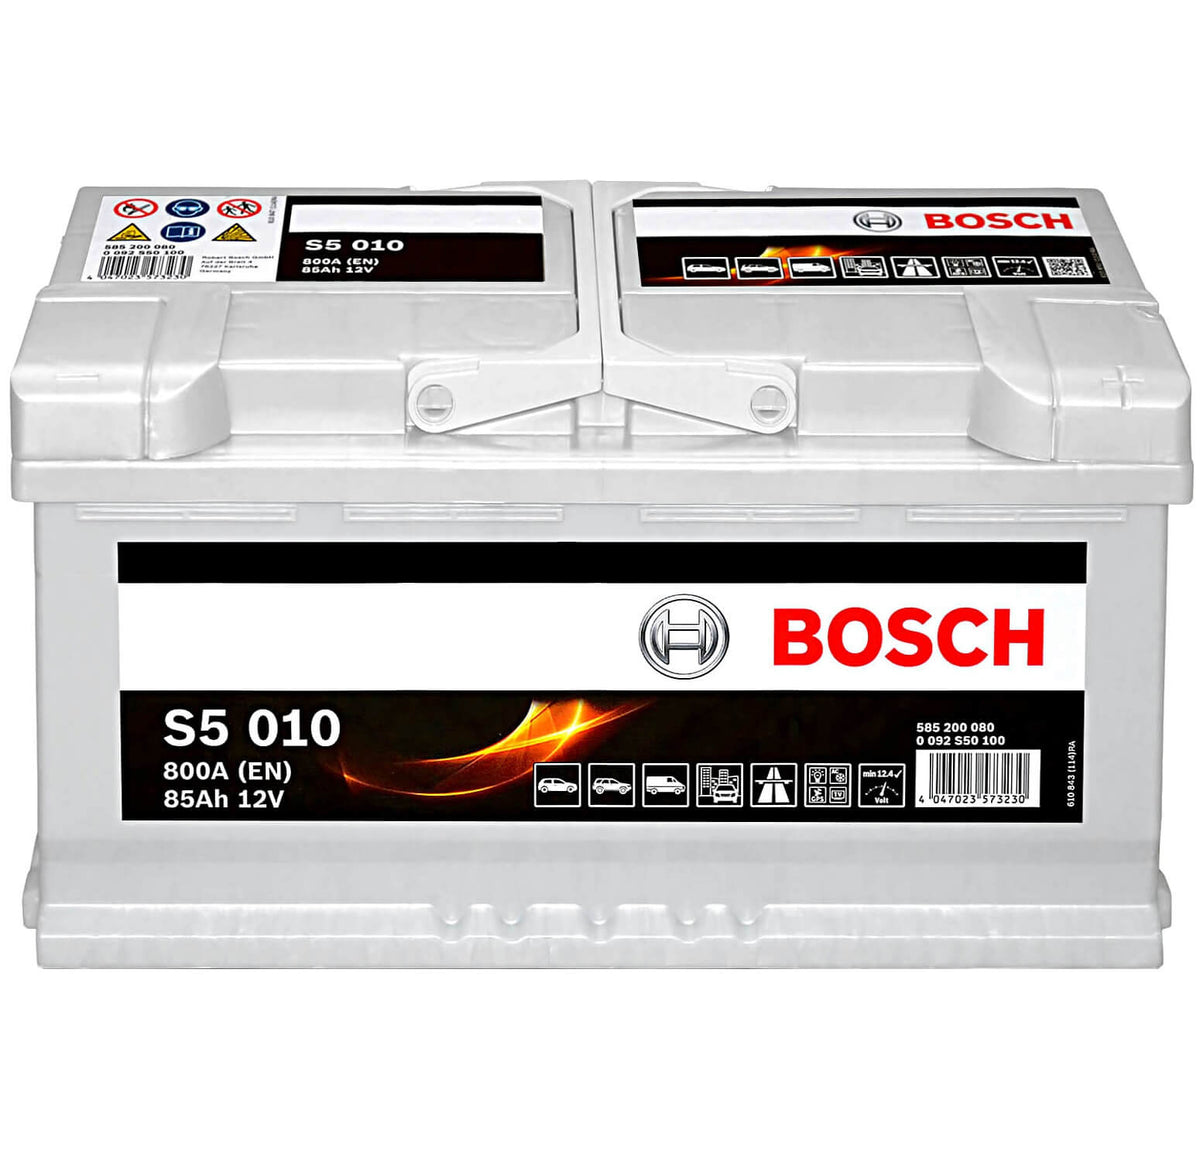 Bosch S5010 12V 85Ah 800A/EN